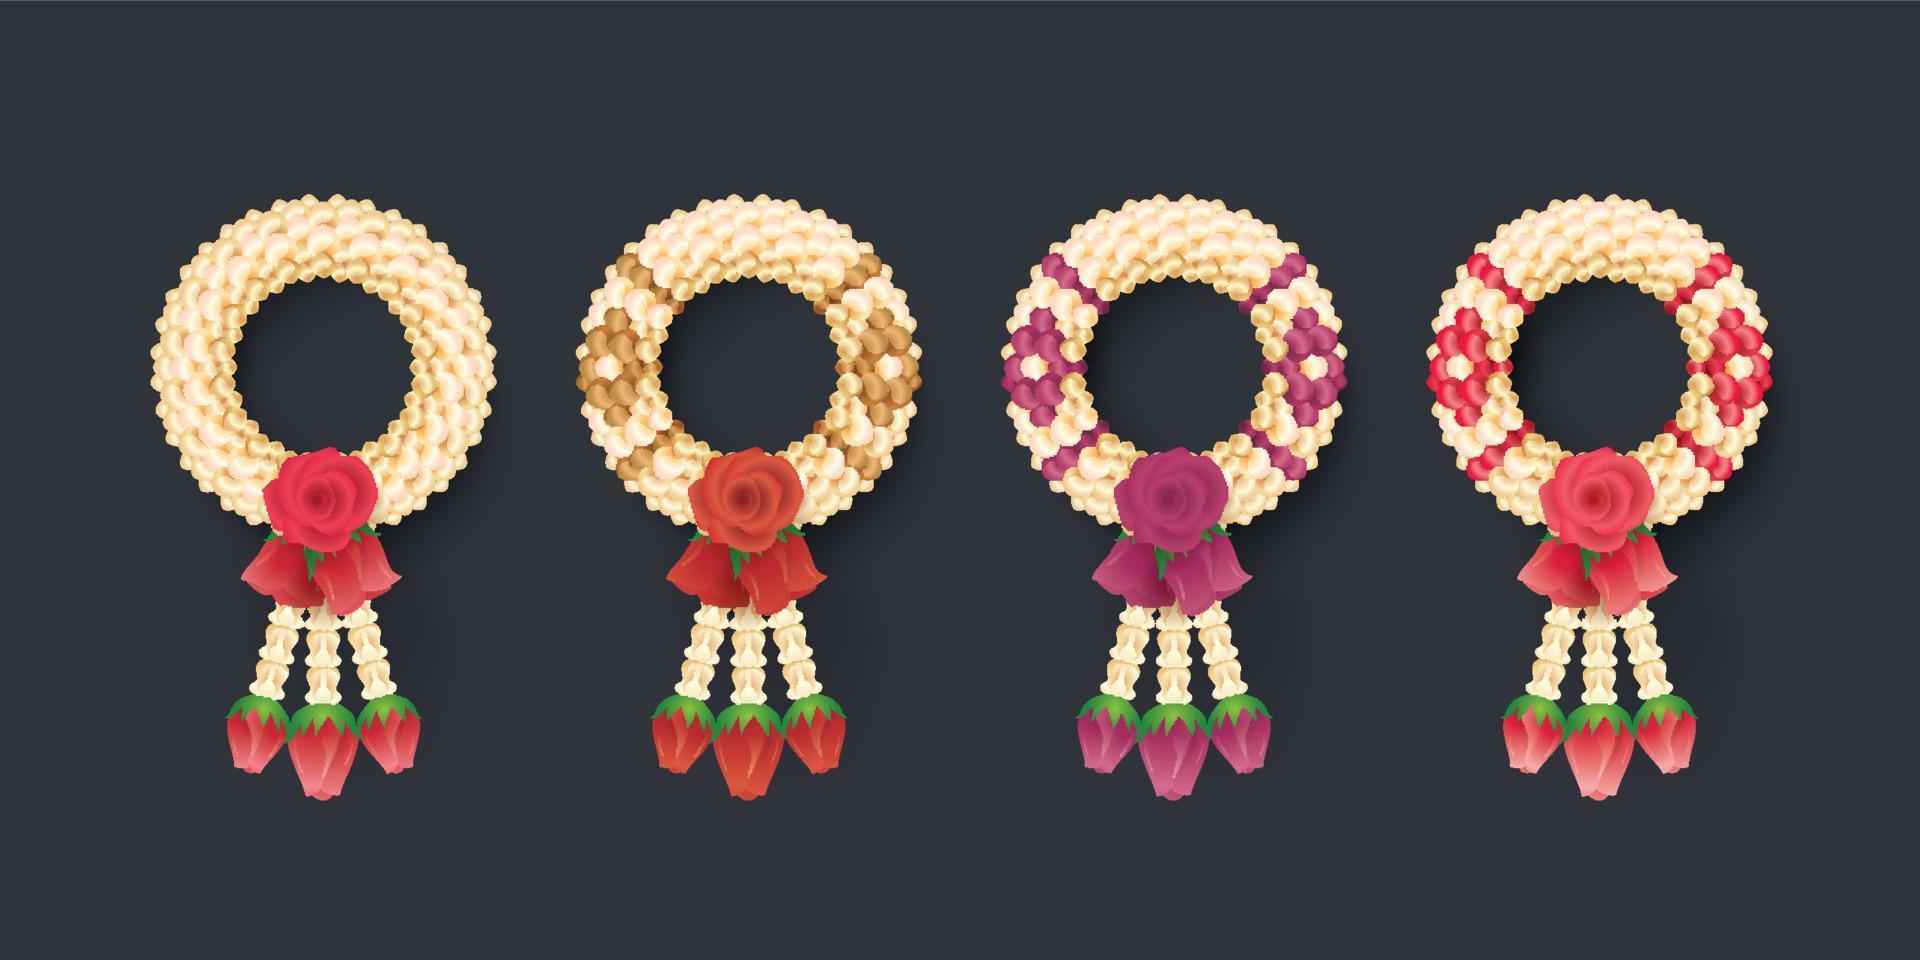 guirnalda tailandesa de jazmín y rosas, ilustración del arte tailandés vector